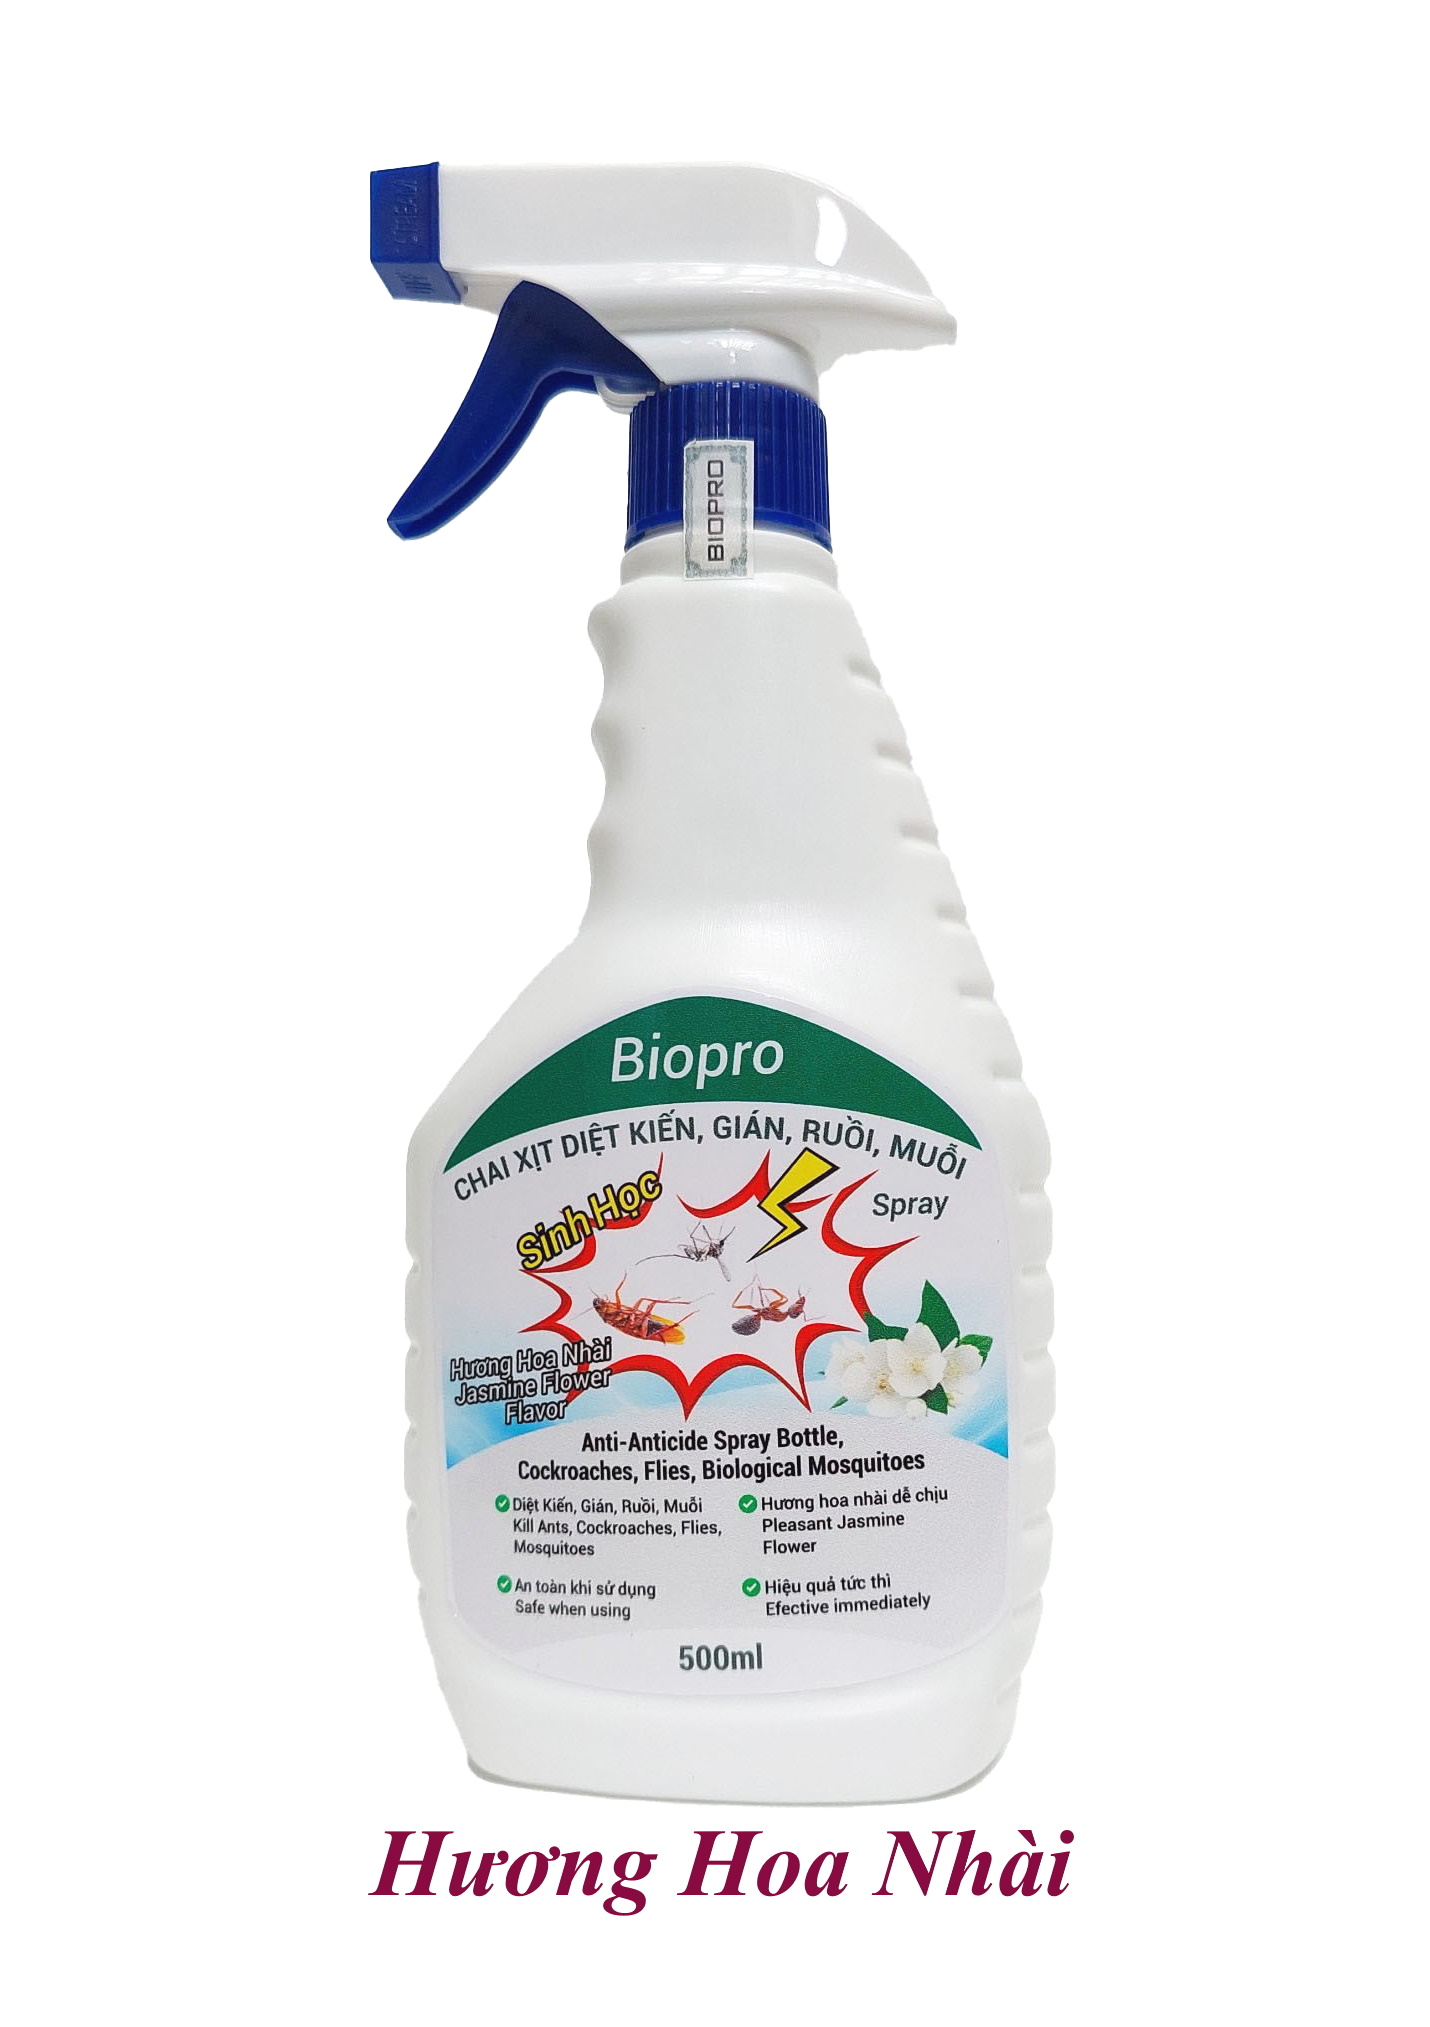 Thuốc xịt sinh học Diệt kiến Diệt gián Diệt ruồi Diệt muỗi Biopro Hương hoa nhài dịu nhẹ, an toàn, hiệu quả dài lâu